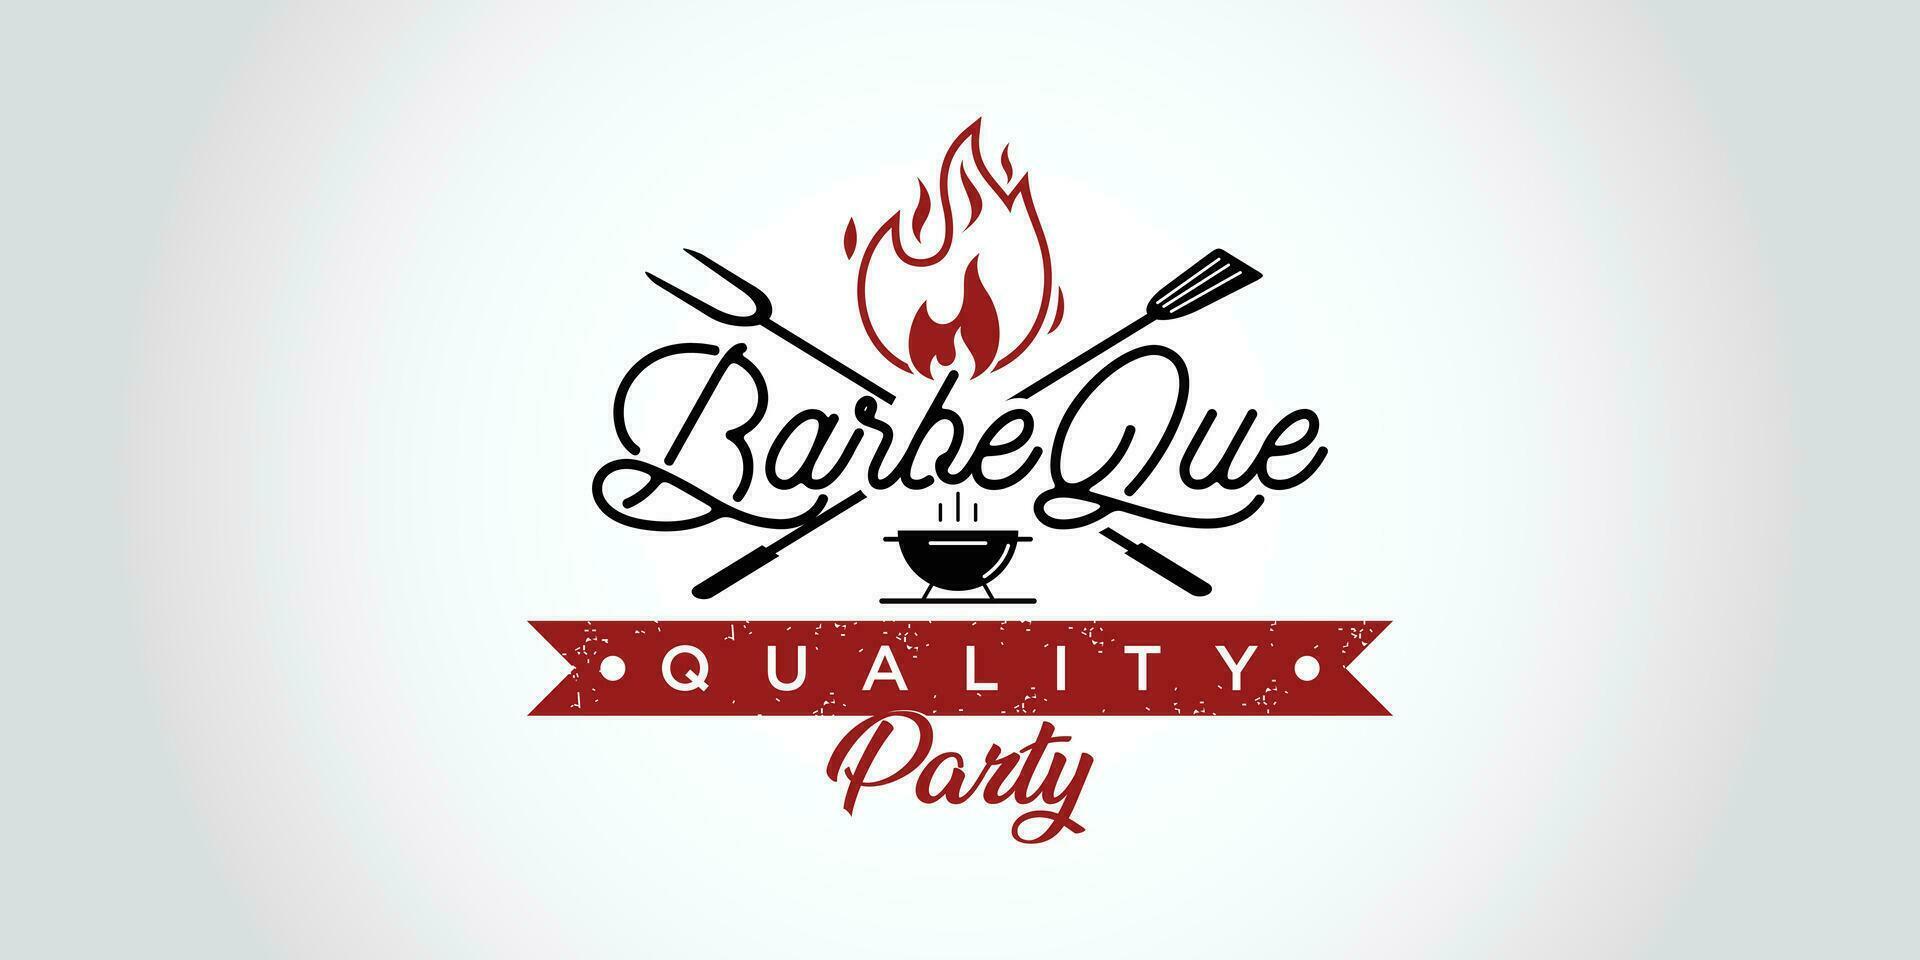 Logo barbecue with flame logo vector